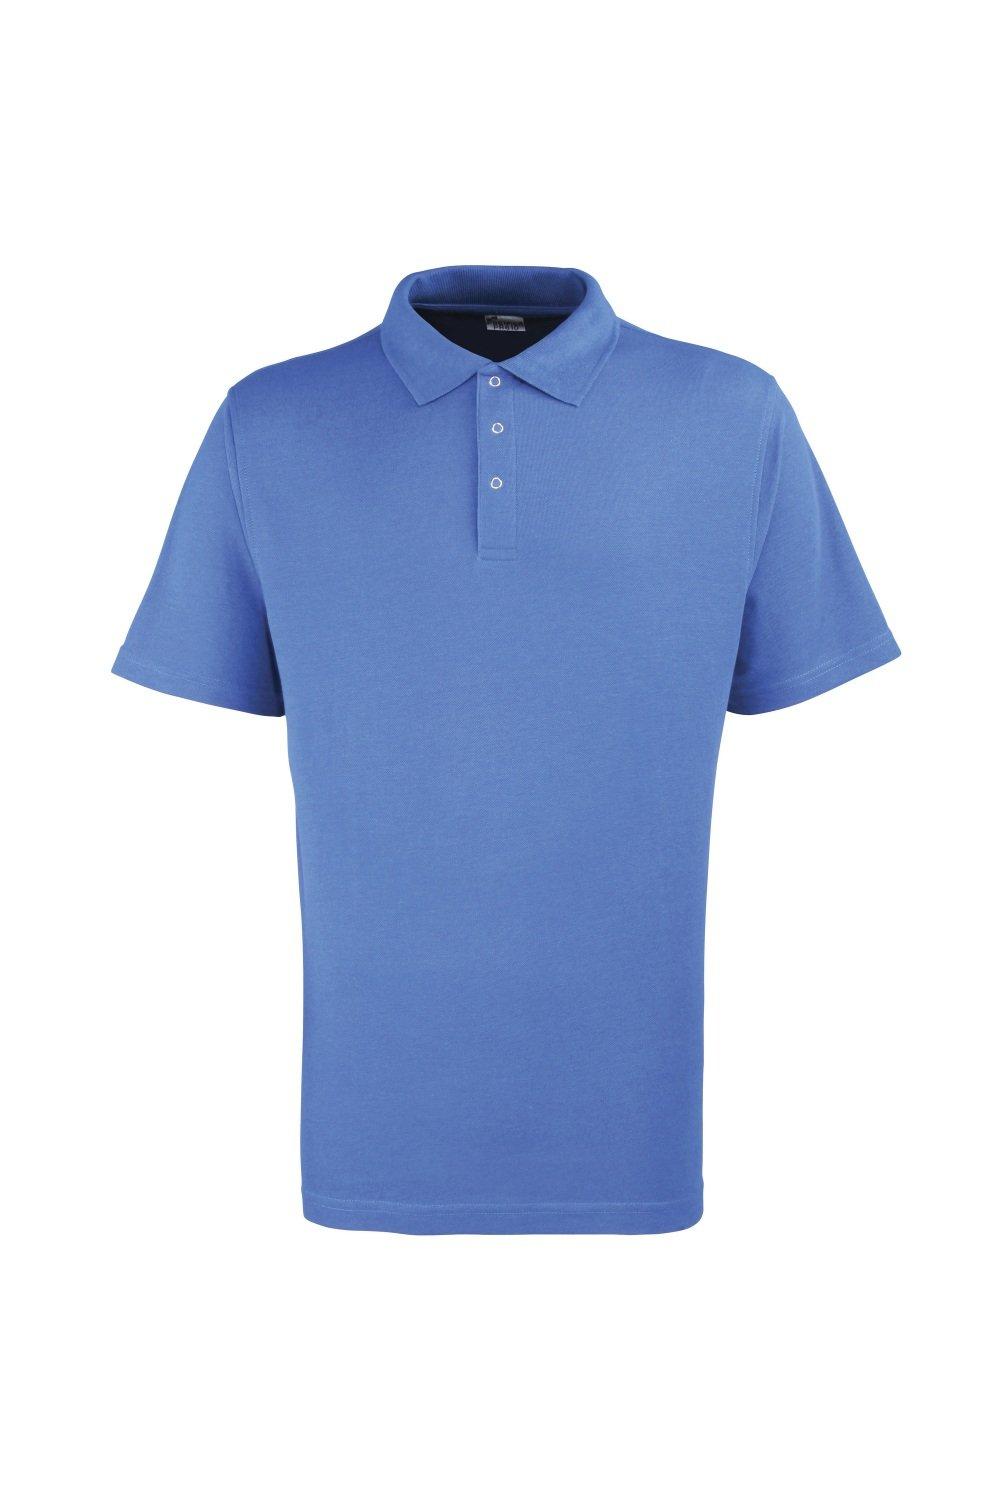 Однотонная рубашка-поло из тяжелого пике с заклепками Premier, синий рубашка sol s размер xl белый